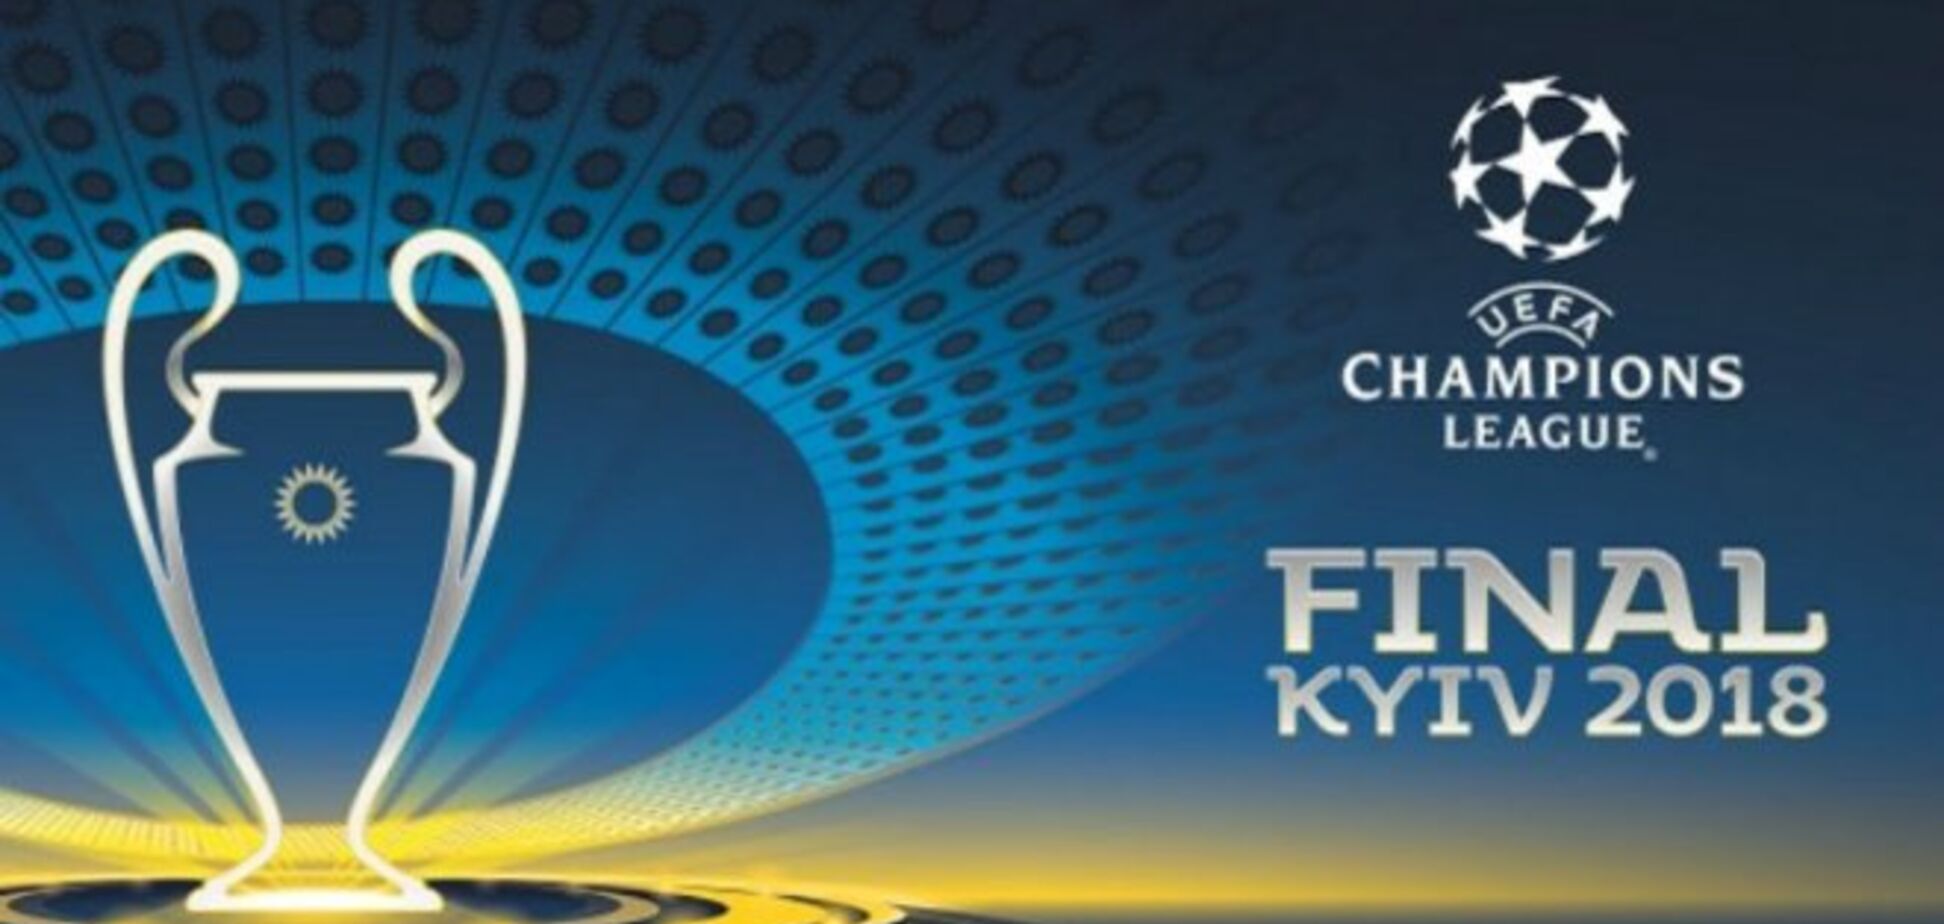 Фанатский скандал вокруг финала Лиги чемпионов: появилась реакция Киева